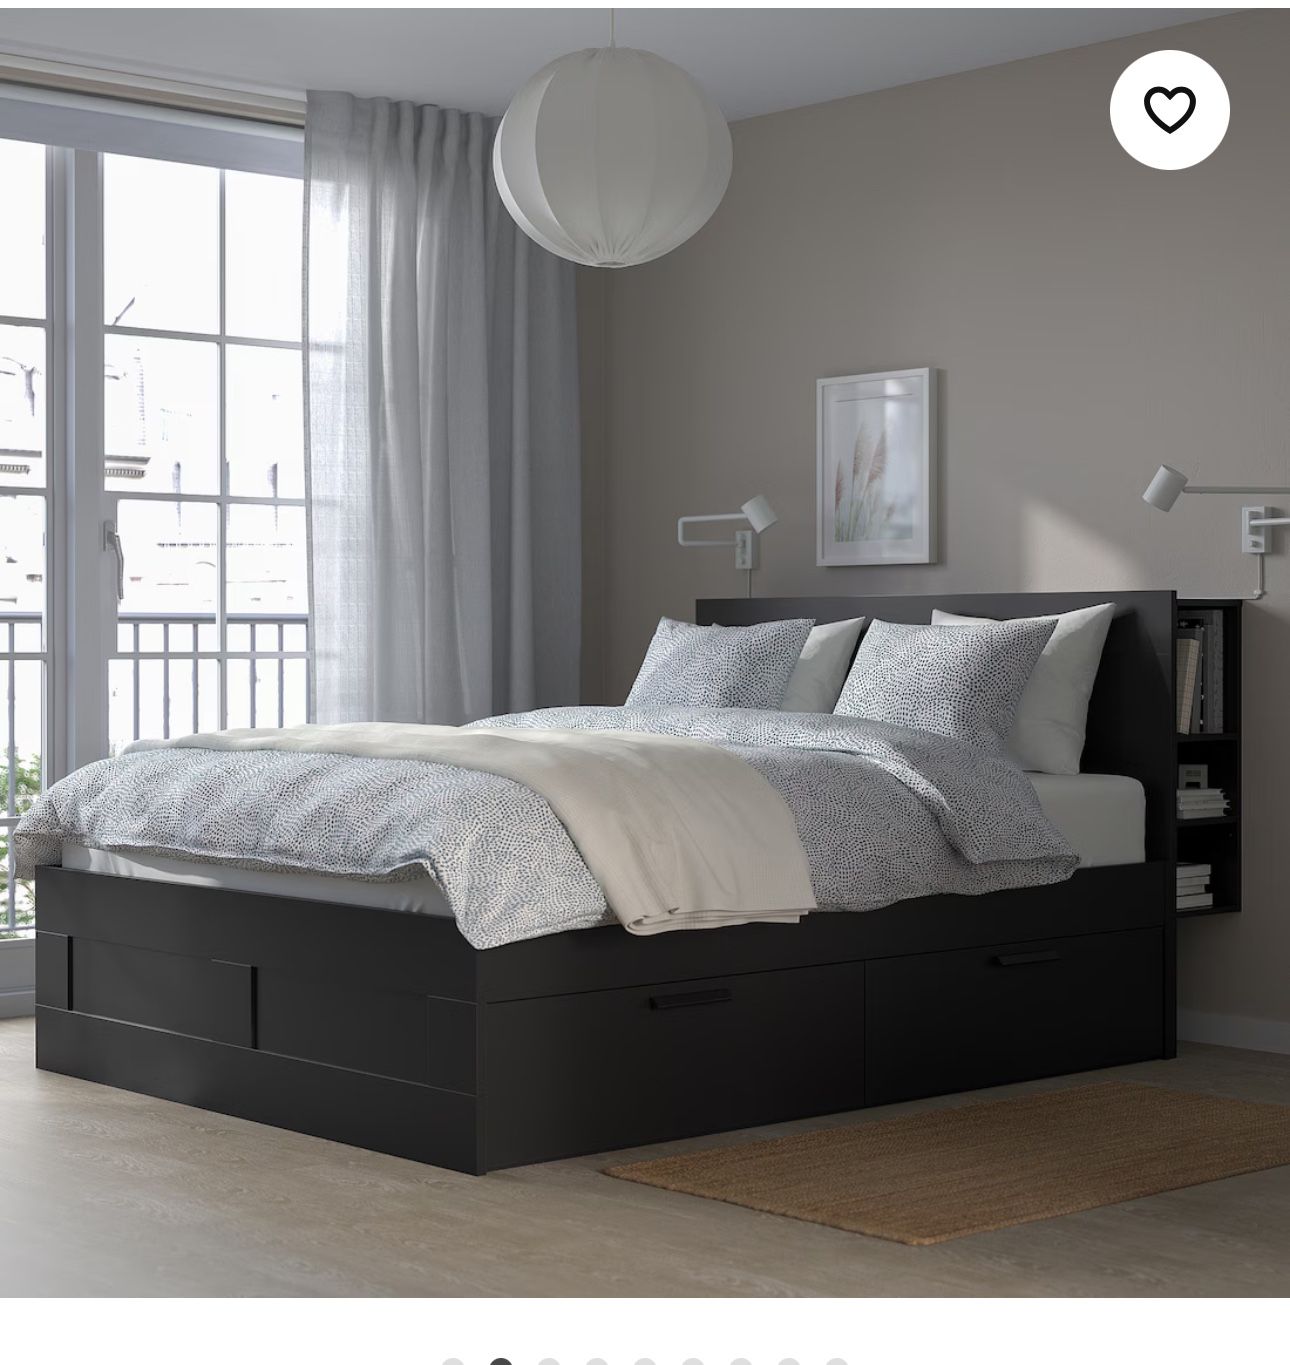 Ikea King Bed with Headboard 